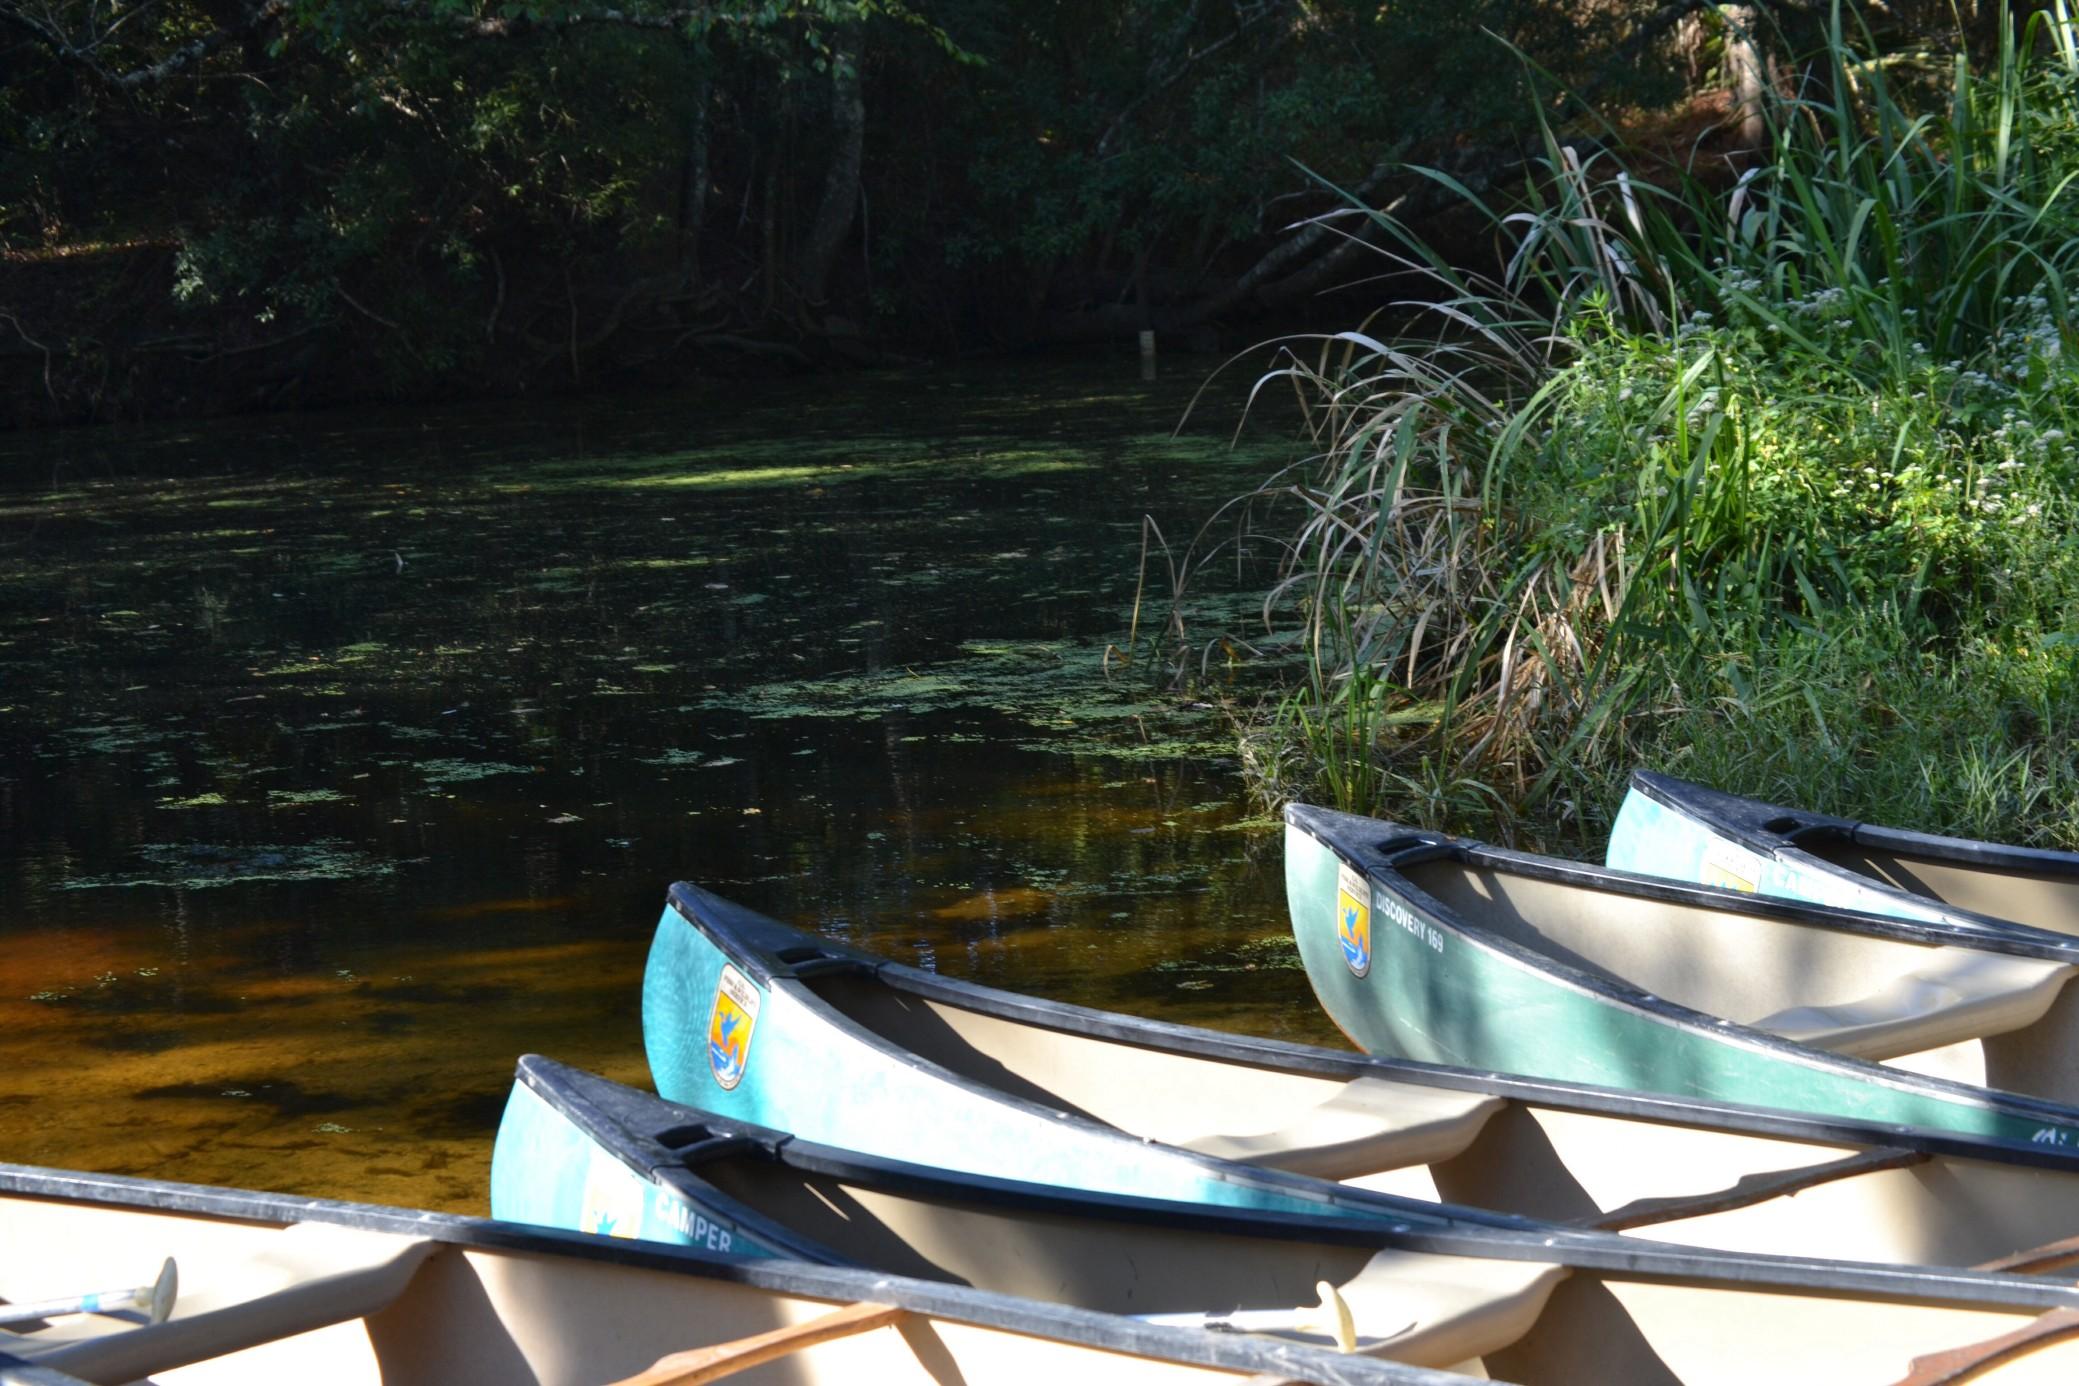 Canoes on the Bayou, Louisiana